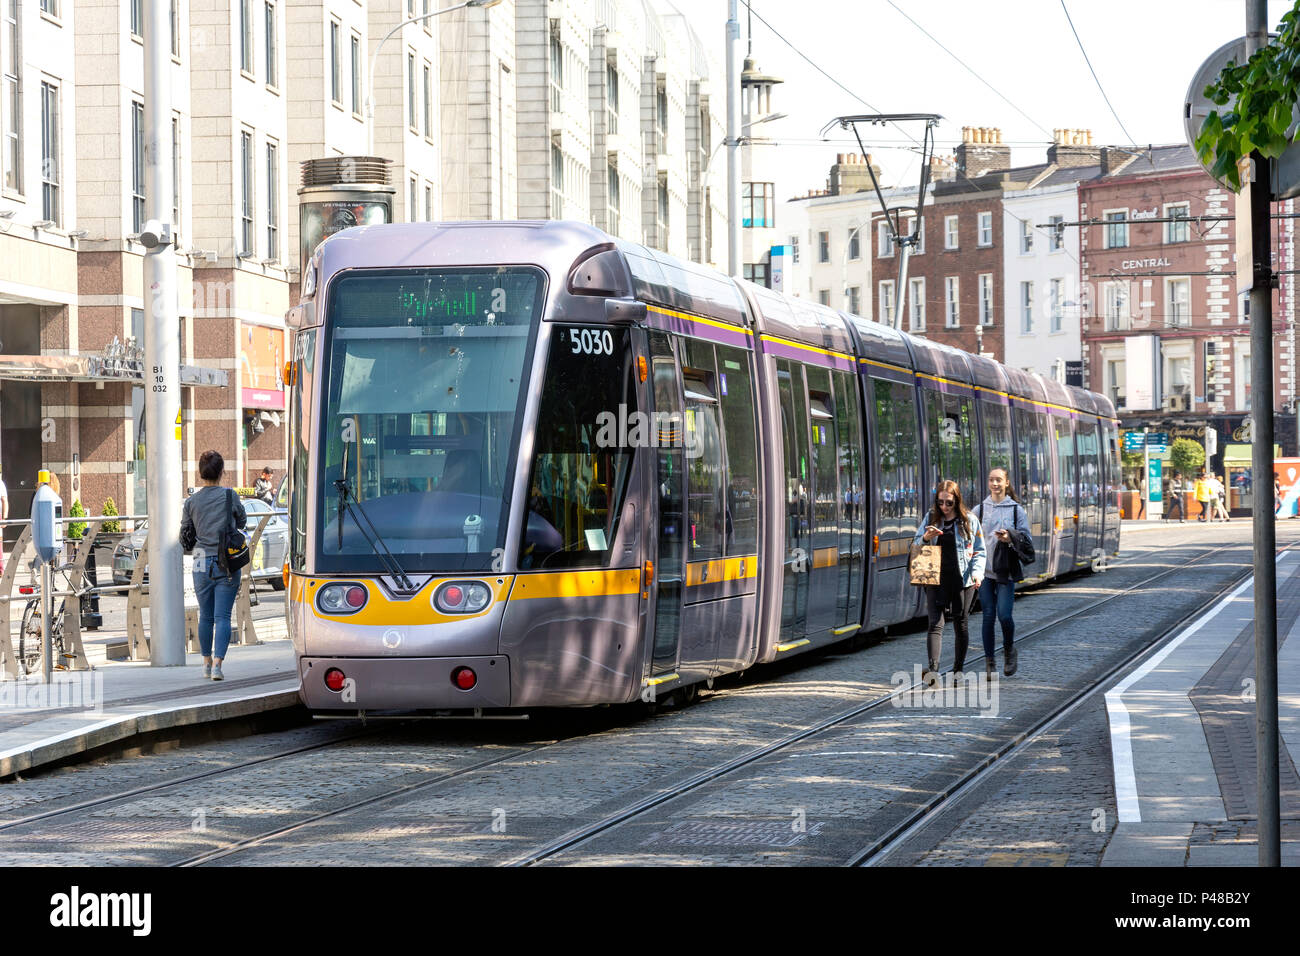 Tramway Luas/système de transport ferroviaire léger, St Stephen's Green, Dublin, République d'Irlande Banque D'Images